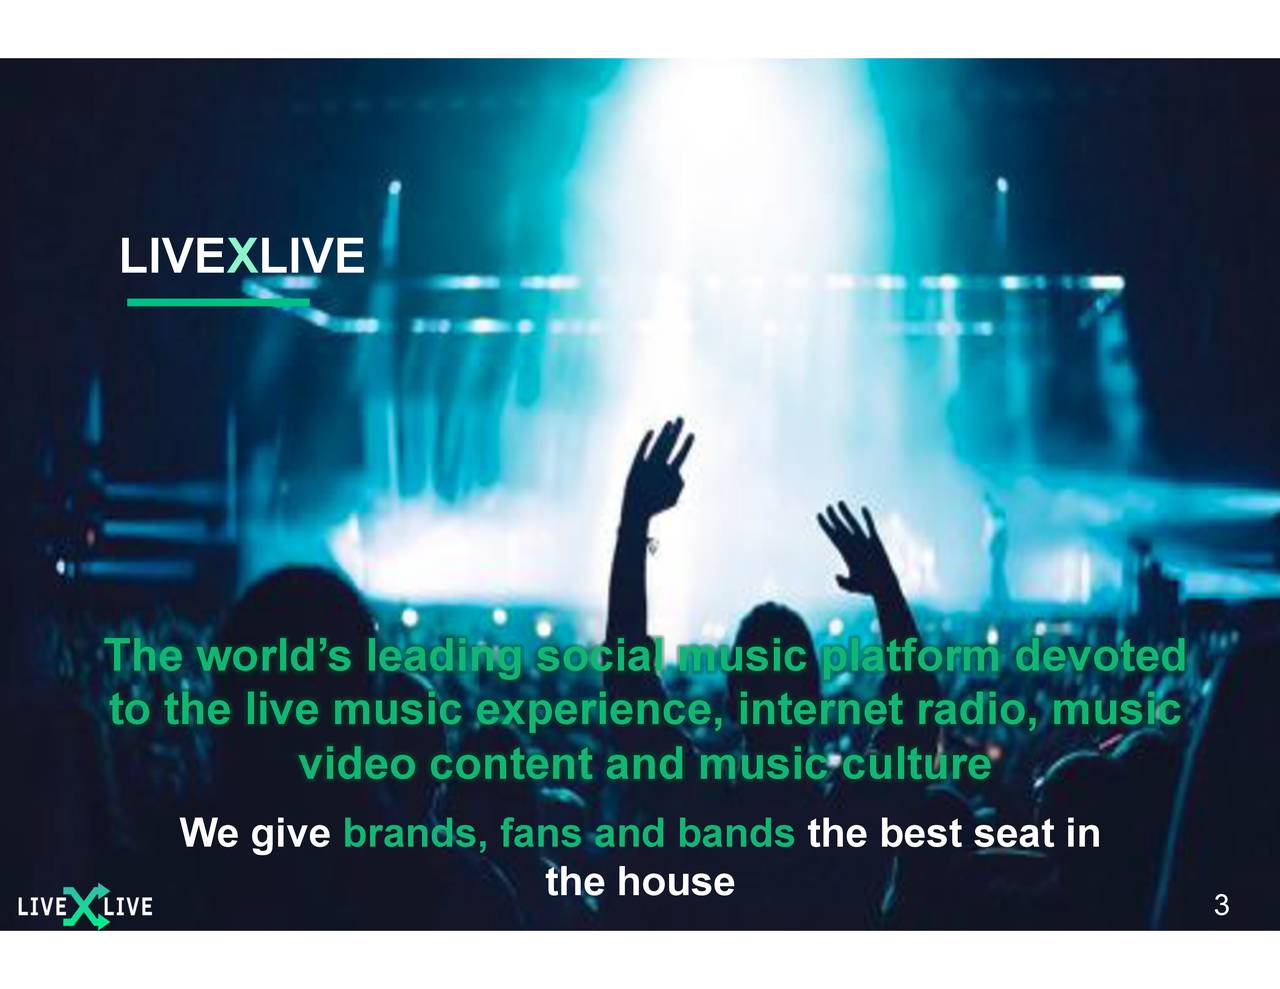 livexlive media